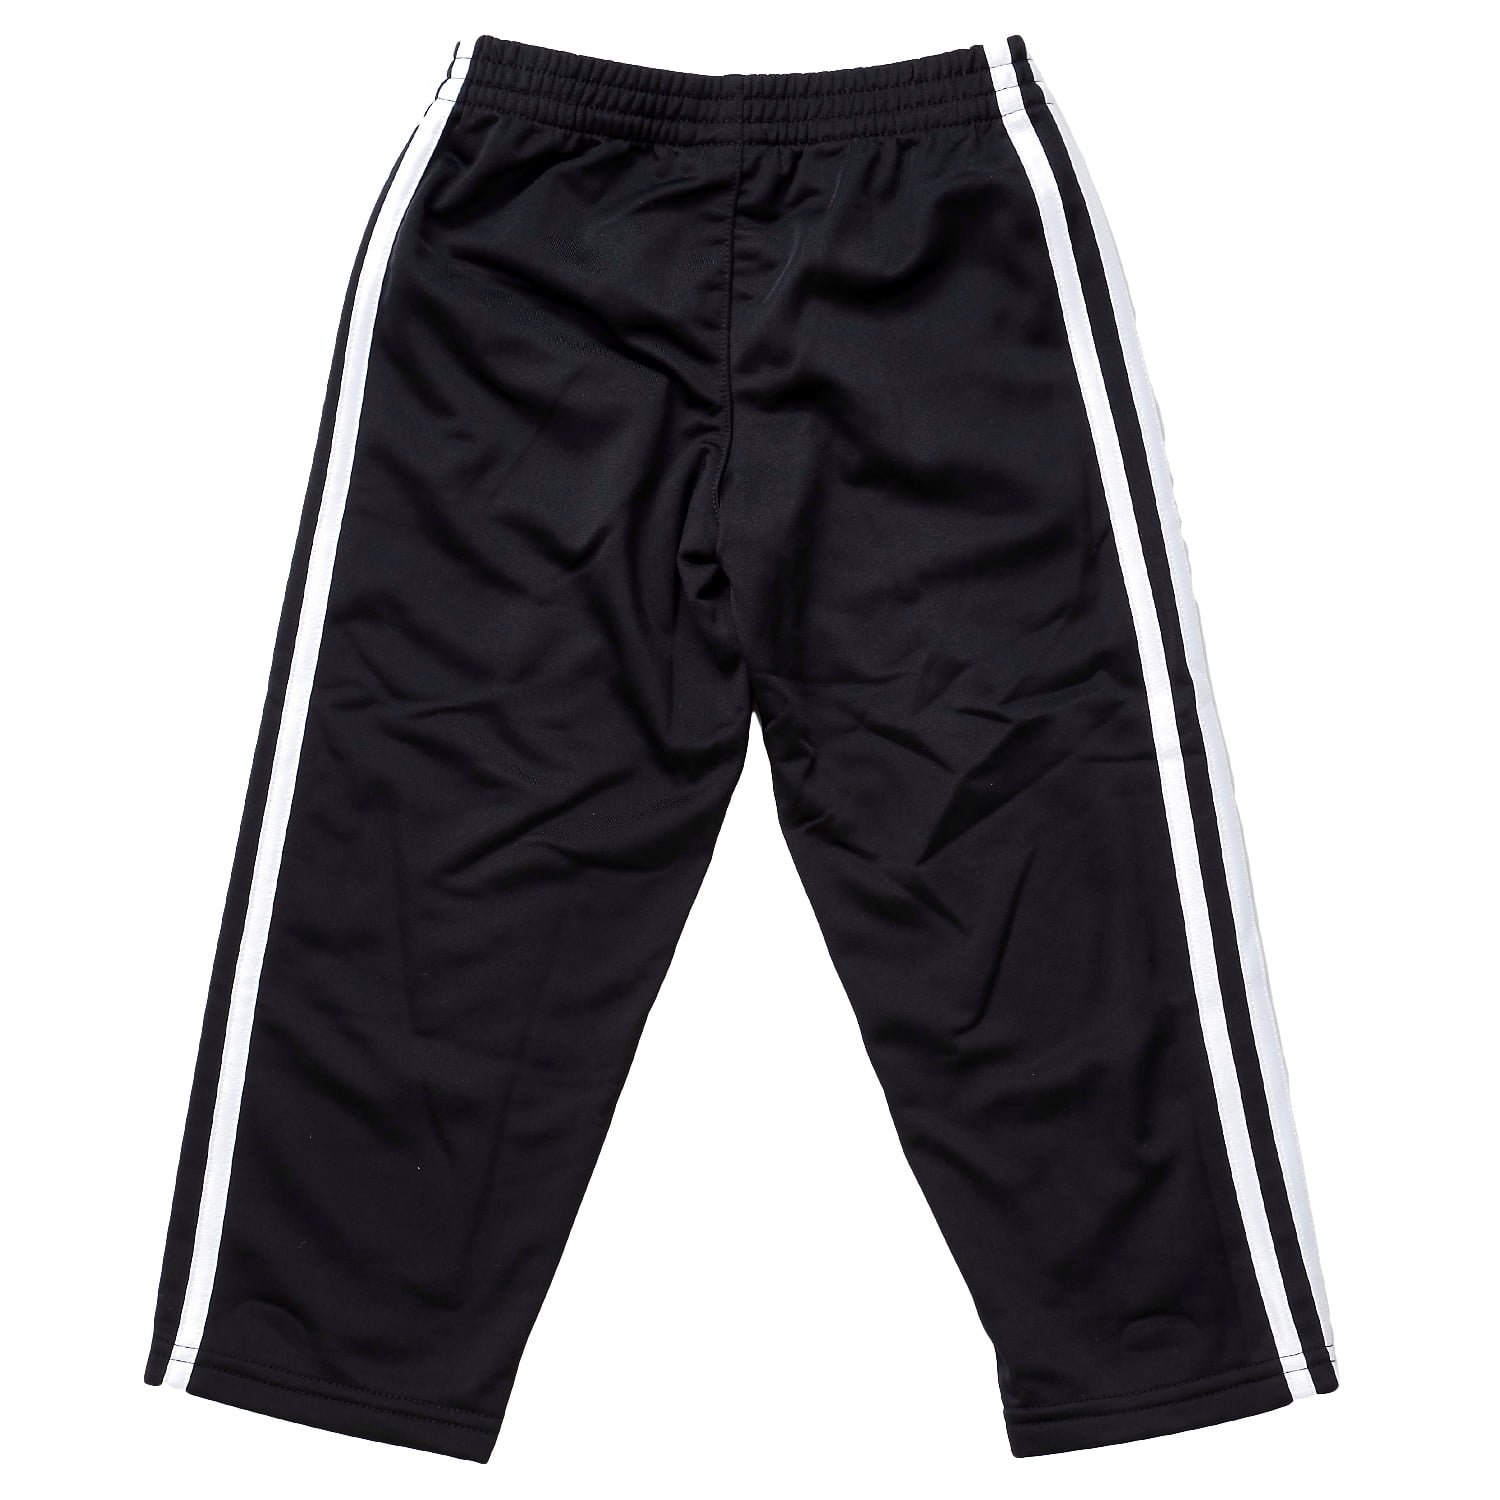 Adidas Tricot Pants - Black Adi - Boys - 5 - Walmart.com - Walmart.com